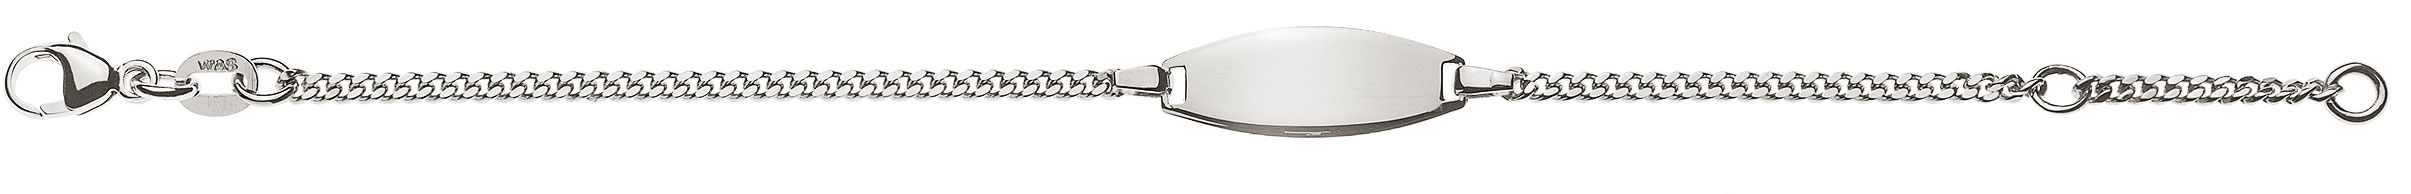 AURONOS Prestige ID-Bracelet 18k Weissgold Panzerkette geschliffen 14cm